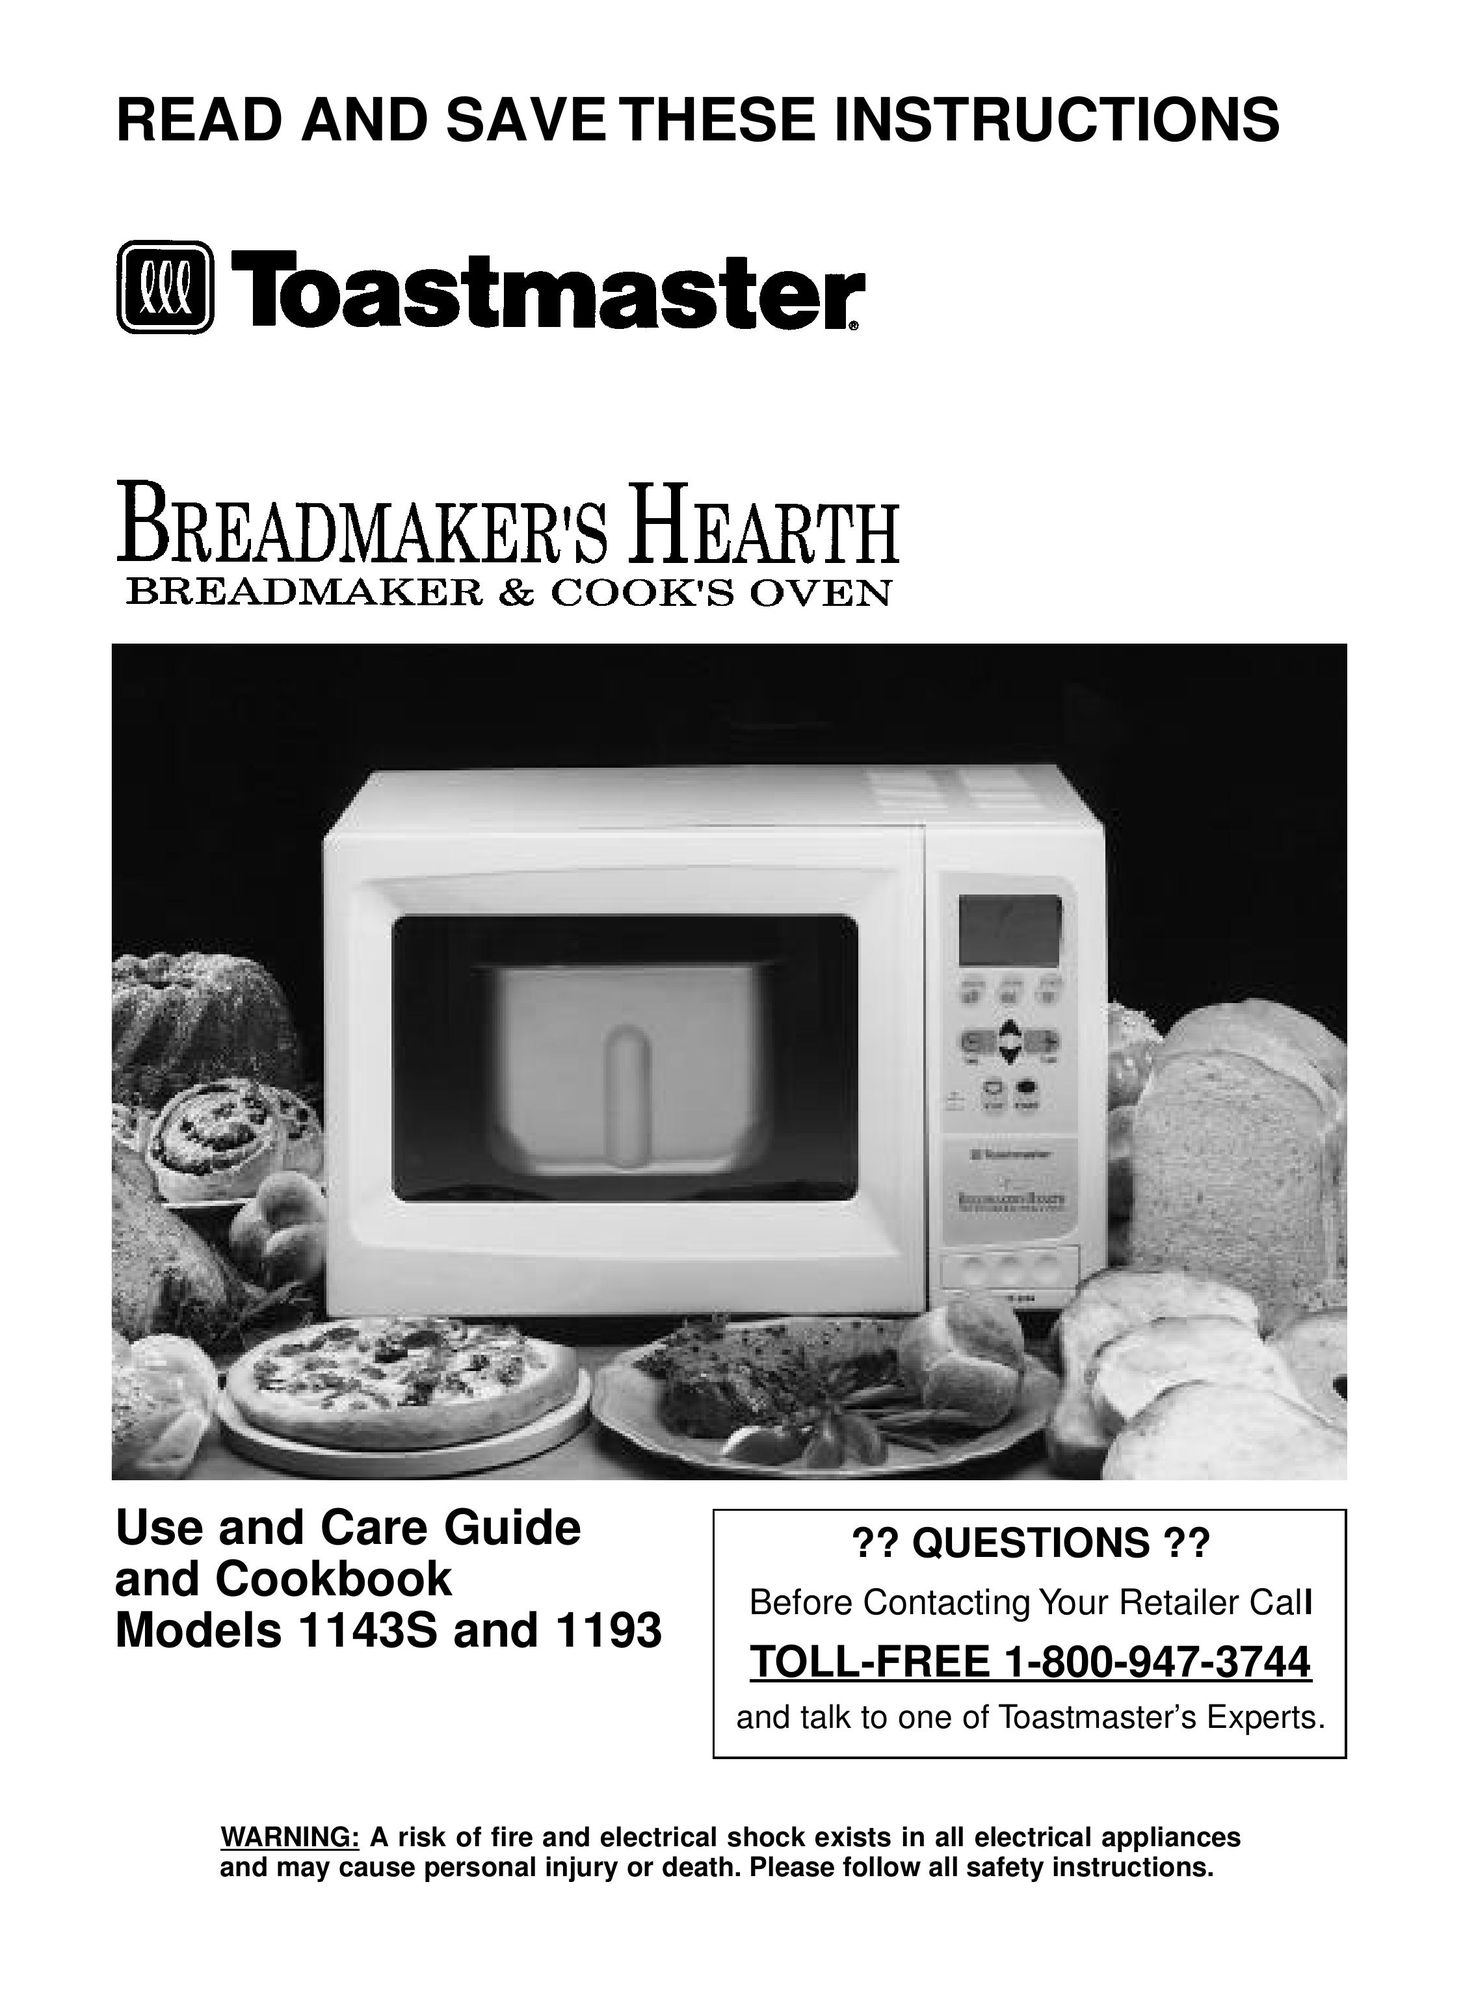 Toastmaster 1193 Bread Maker User Manual